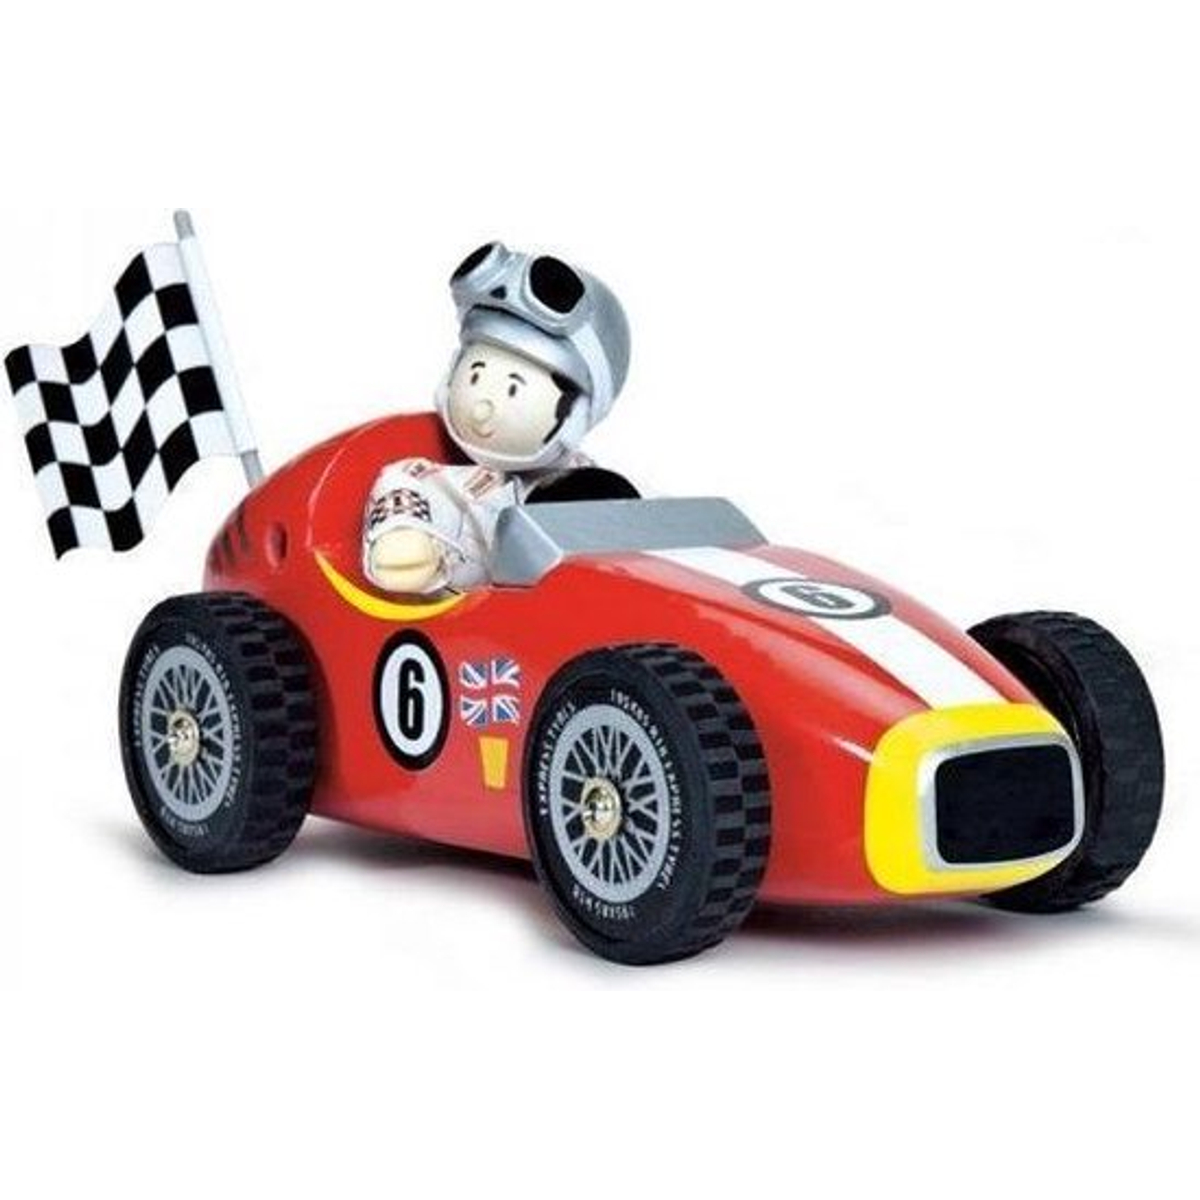 Le Toy Van Speelgoedvoertuig Auto Rode racewagen - Hout